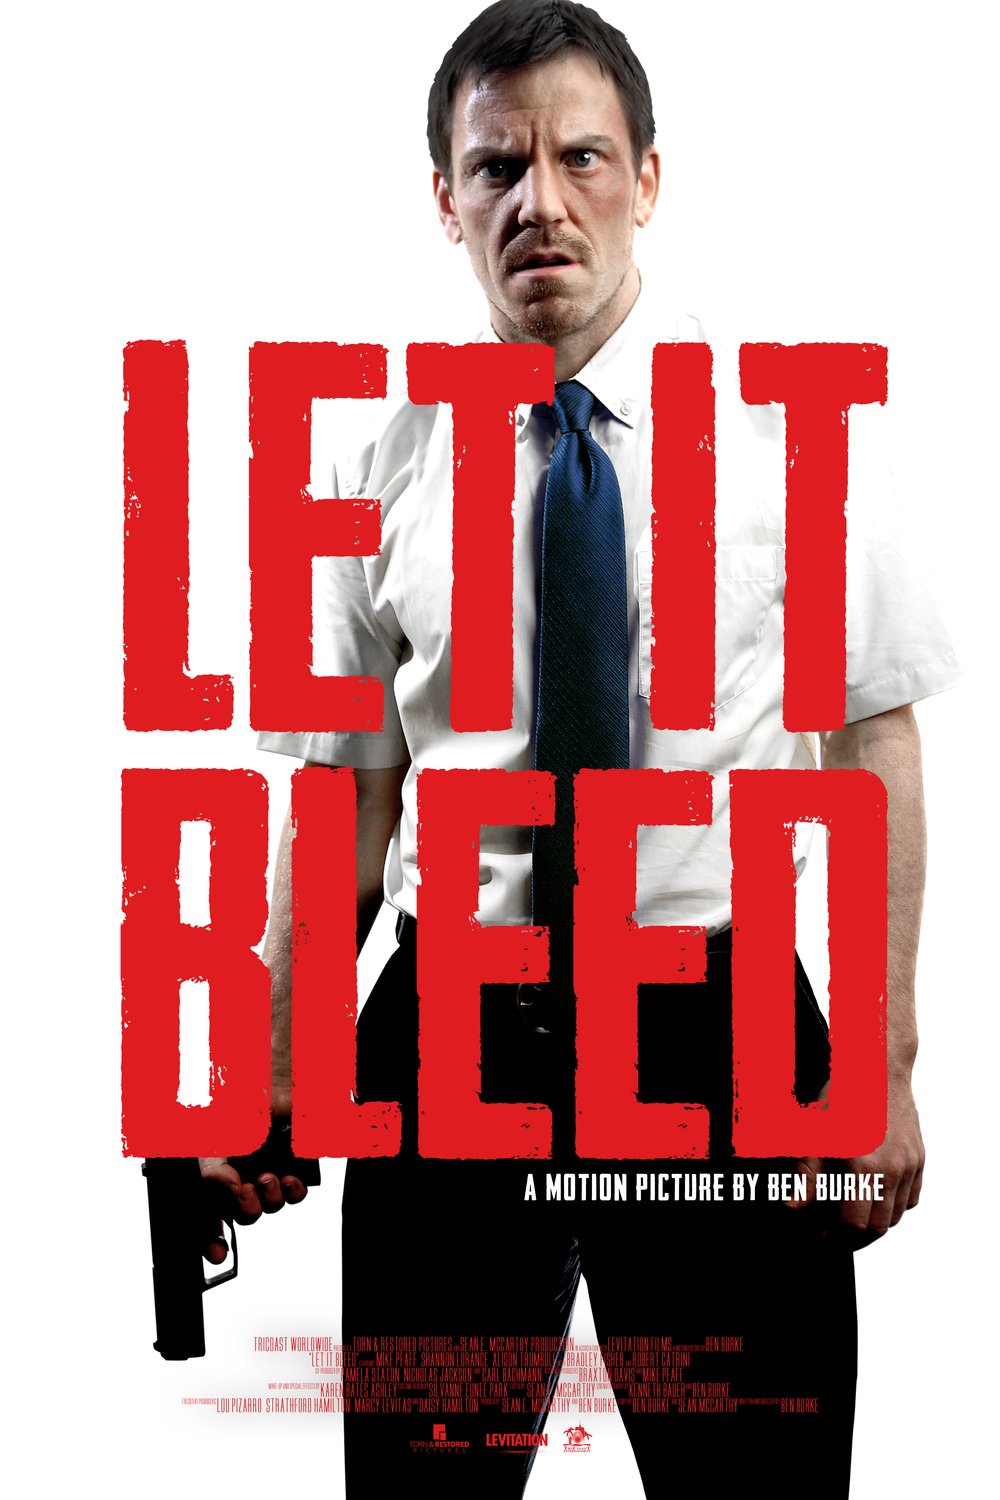 L'affiche du film Let It Bleed